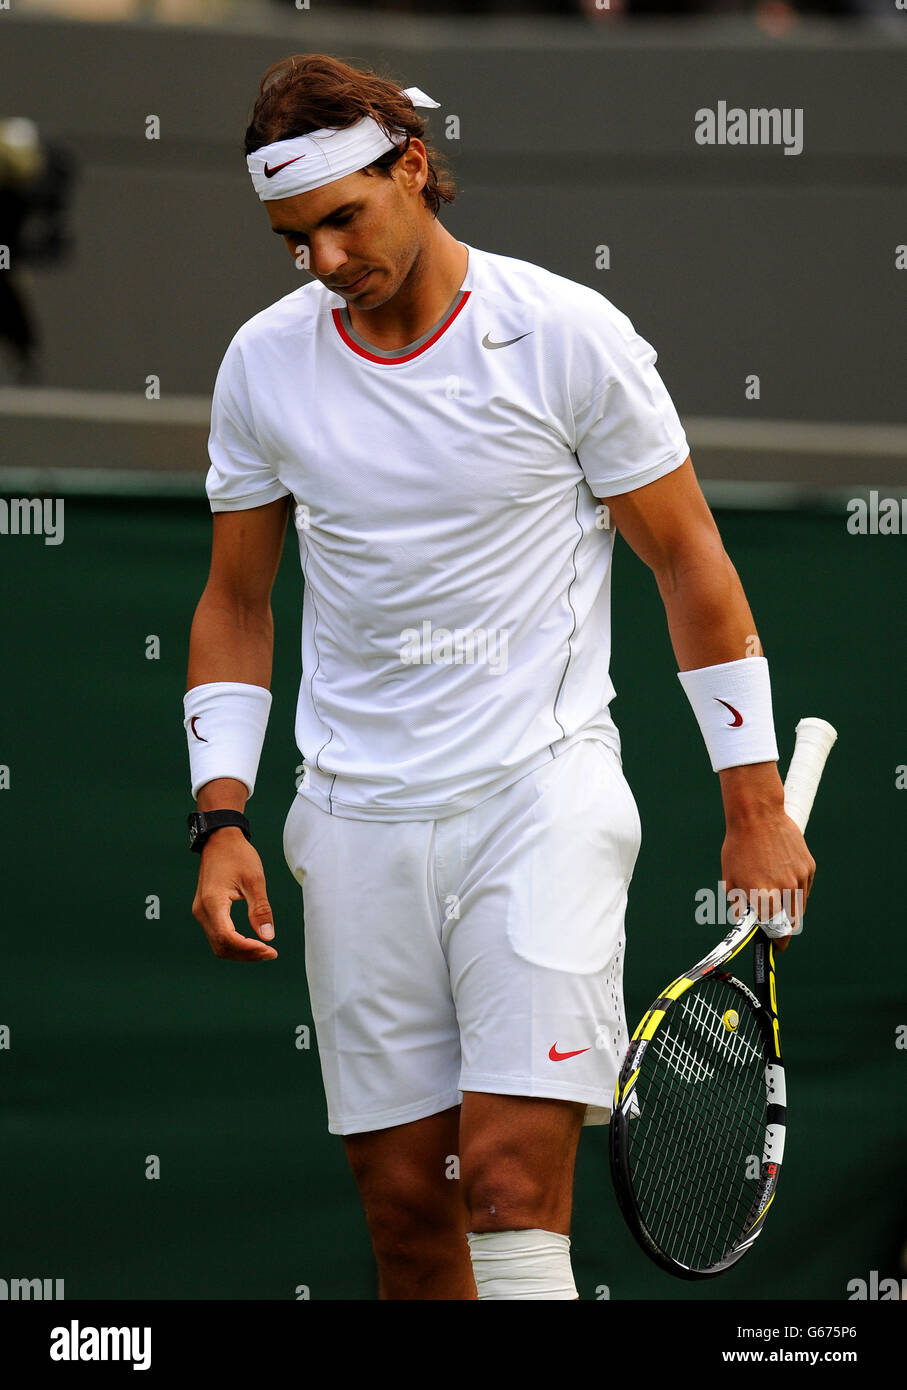 Il spagnolo Rafael Nadal reagisce durante la sua partita contro Steve Darcis del Belgio durante il giorno uno dei Campionati di Wimbledon all'All England Lawn Tennis and Croquet Club, Wimbledon. Foto Stock